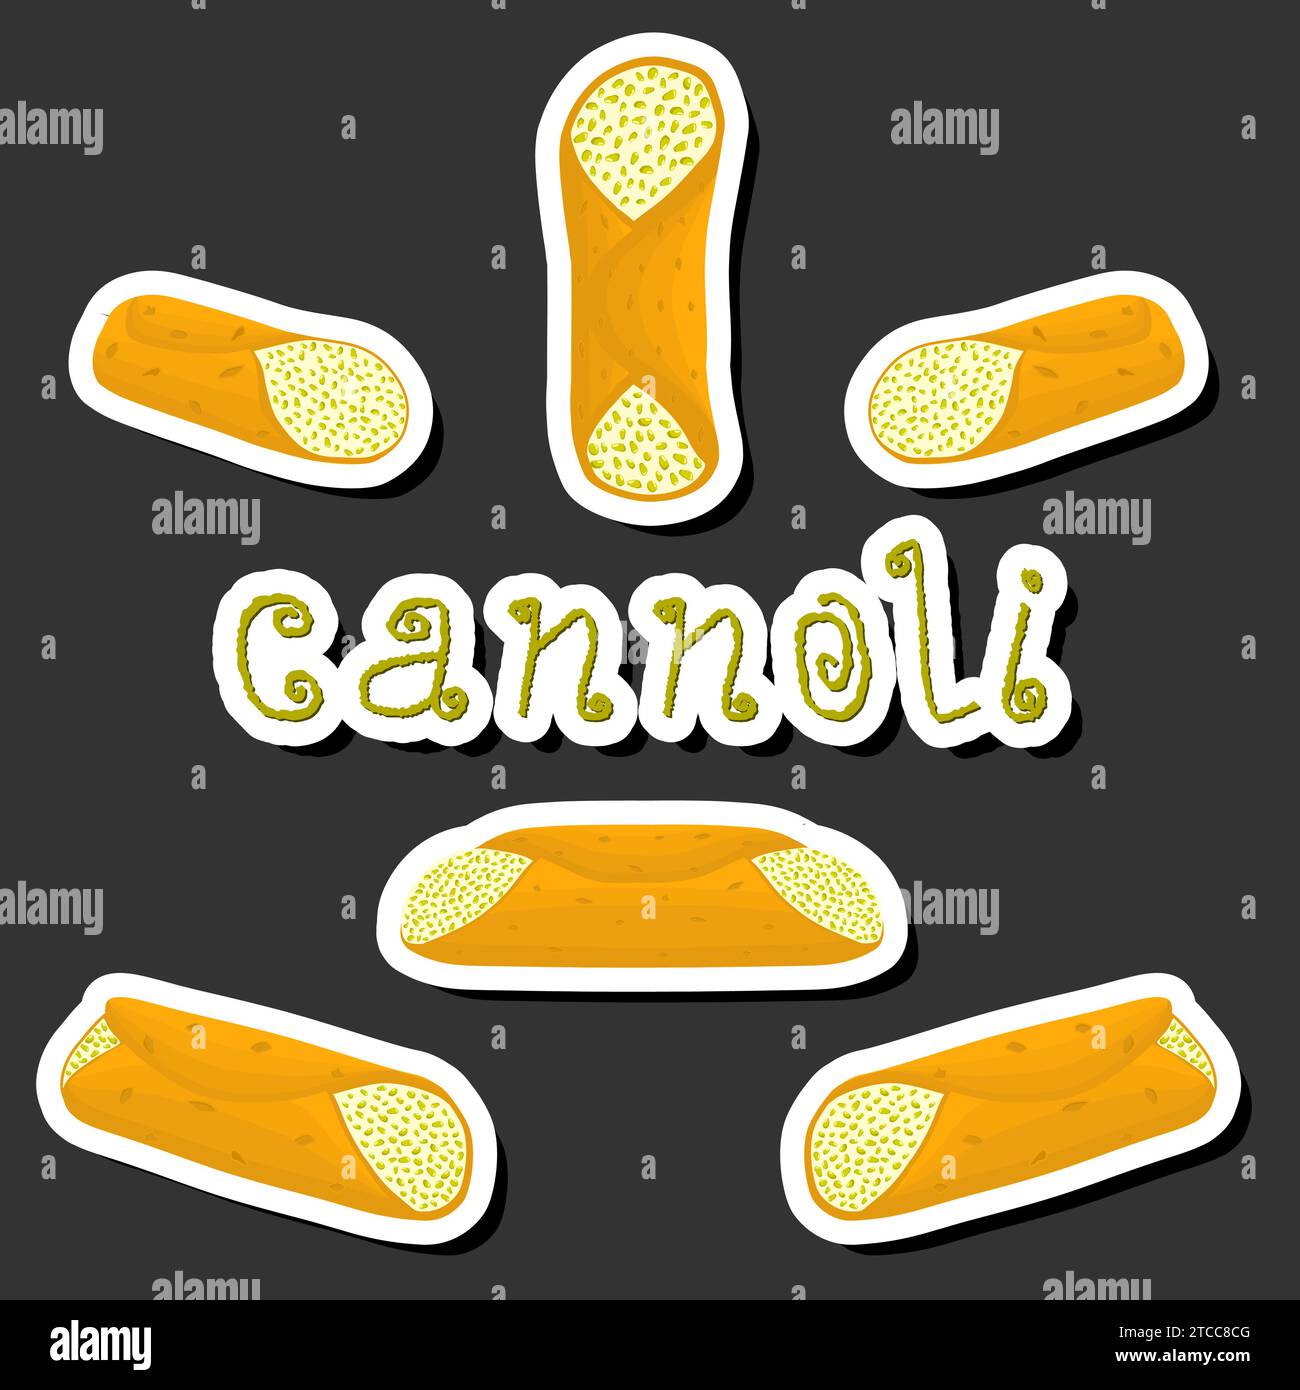 Ilustración sobre el tema gran conjunto diferentes tipos de gofres dulces cannoli de postre siciliano, waffle crujiente paja llena de queso ricotta, oblea cannolo wi Ilustración del Vector